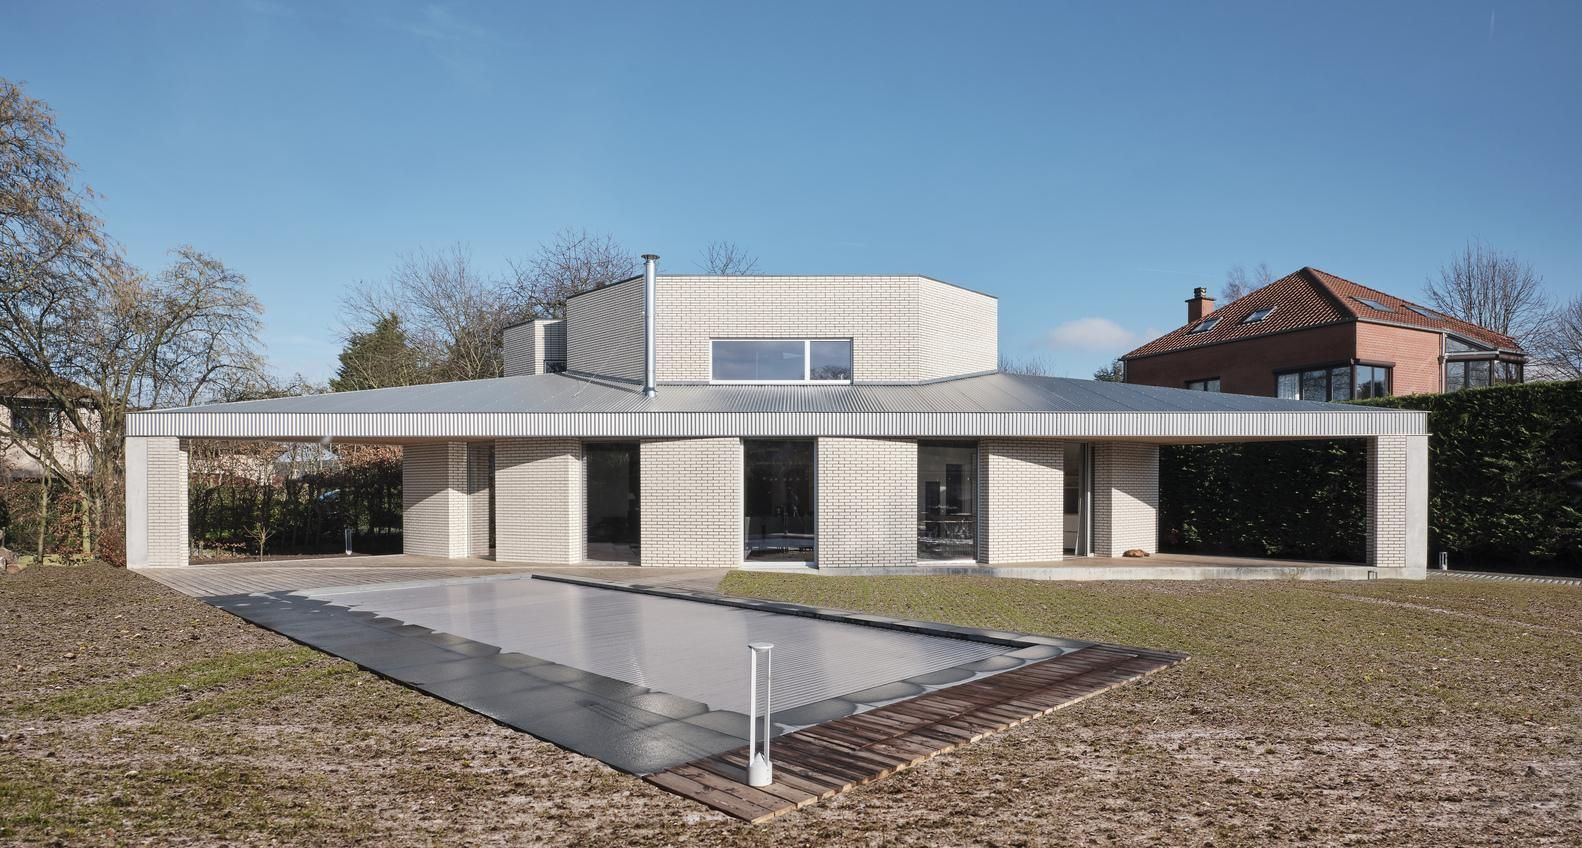 Треугольный белый дом для семьи построили в Бельгии – фото